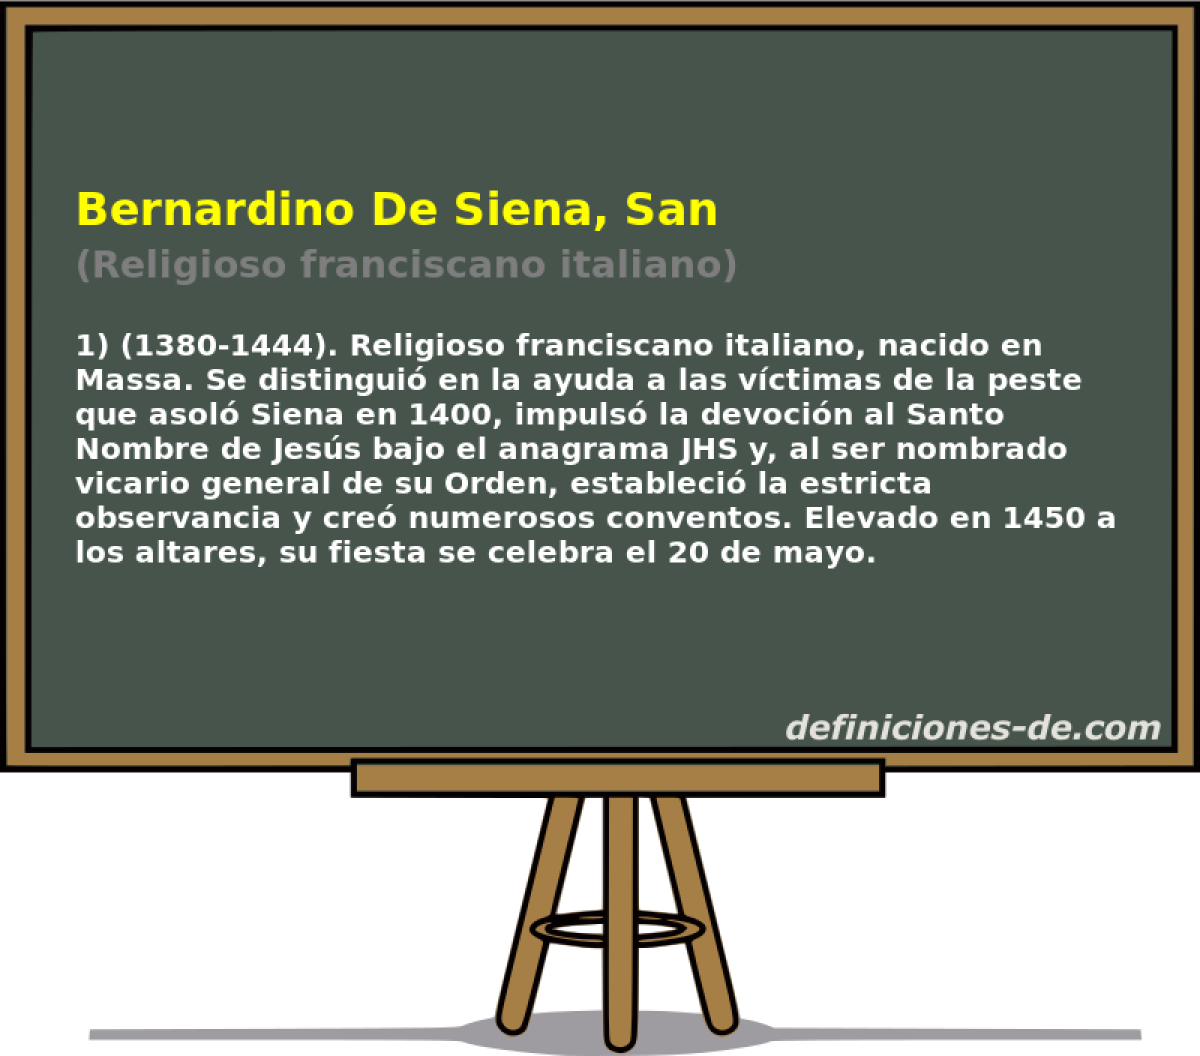 Bernardino De Siena, San (Religioso franciscano italiano)